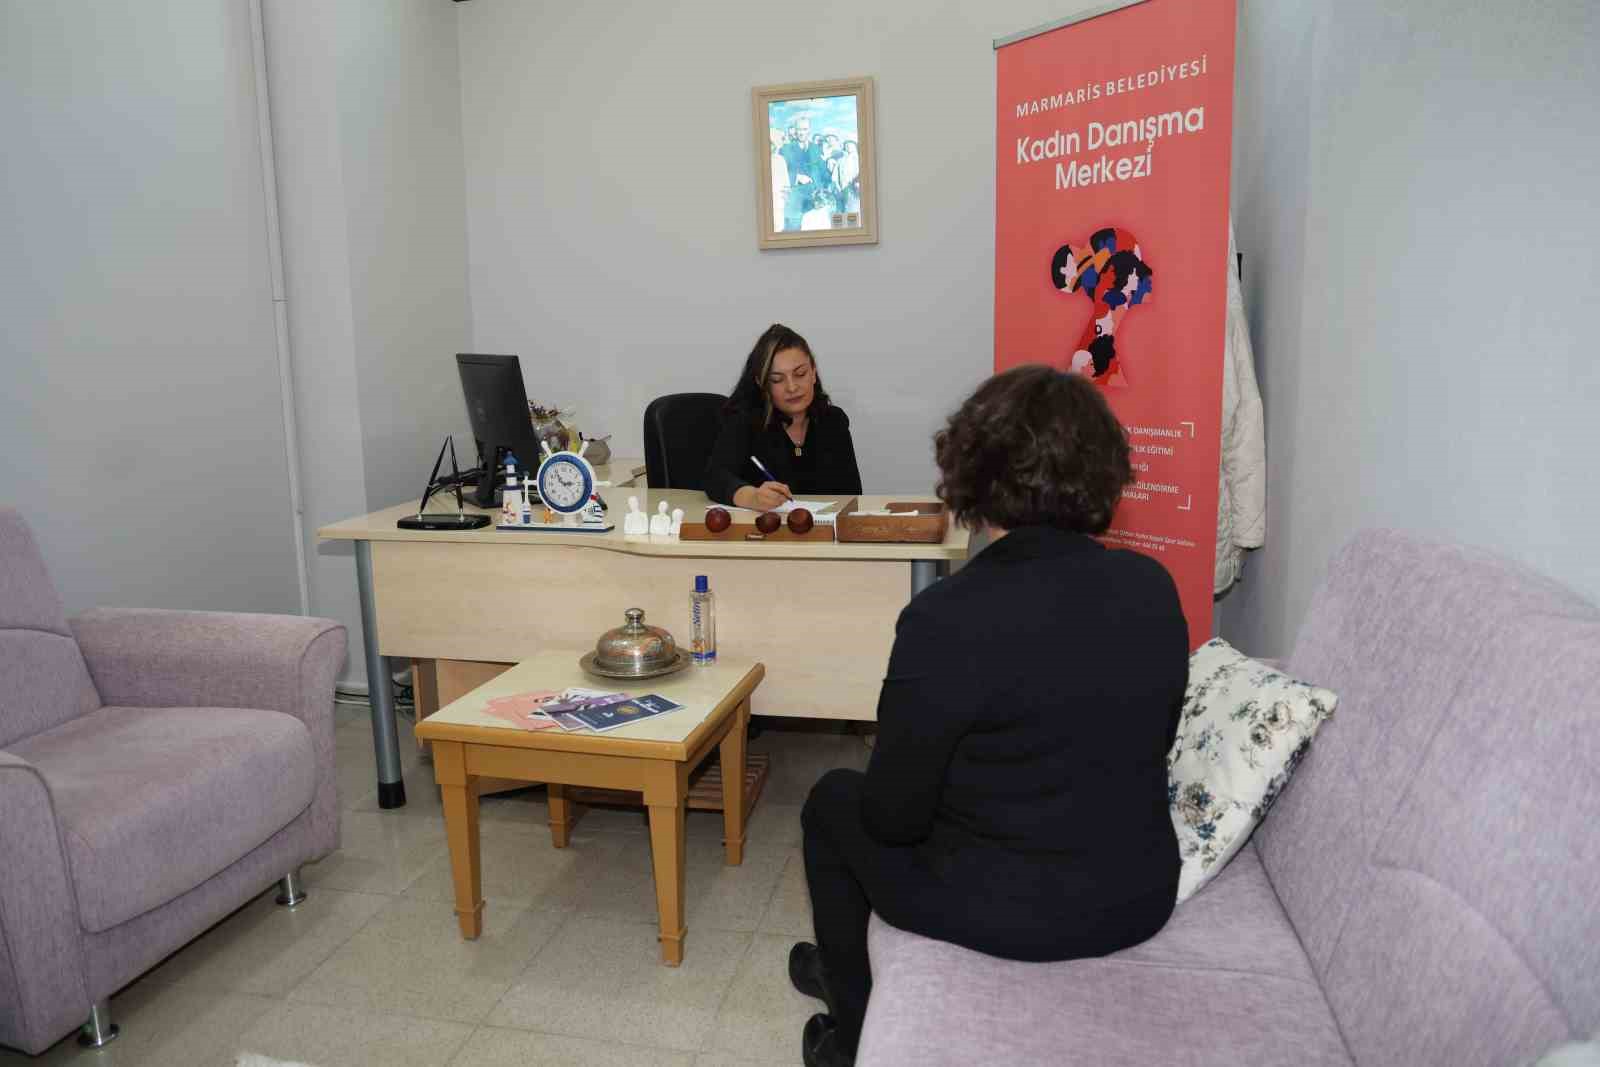 Marmaris’teki Kadın Danışma Merkezi, halkın yanında kalmaya devam ediyor